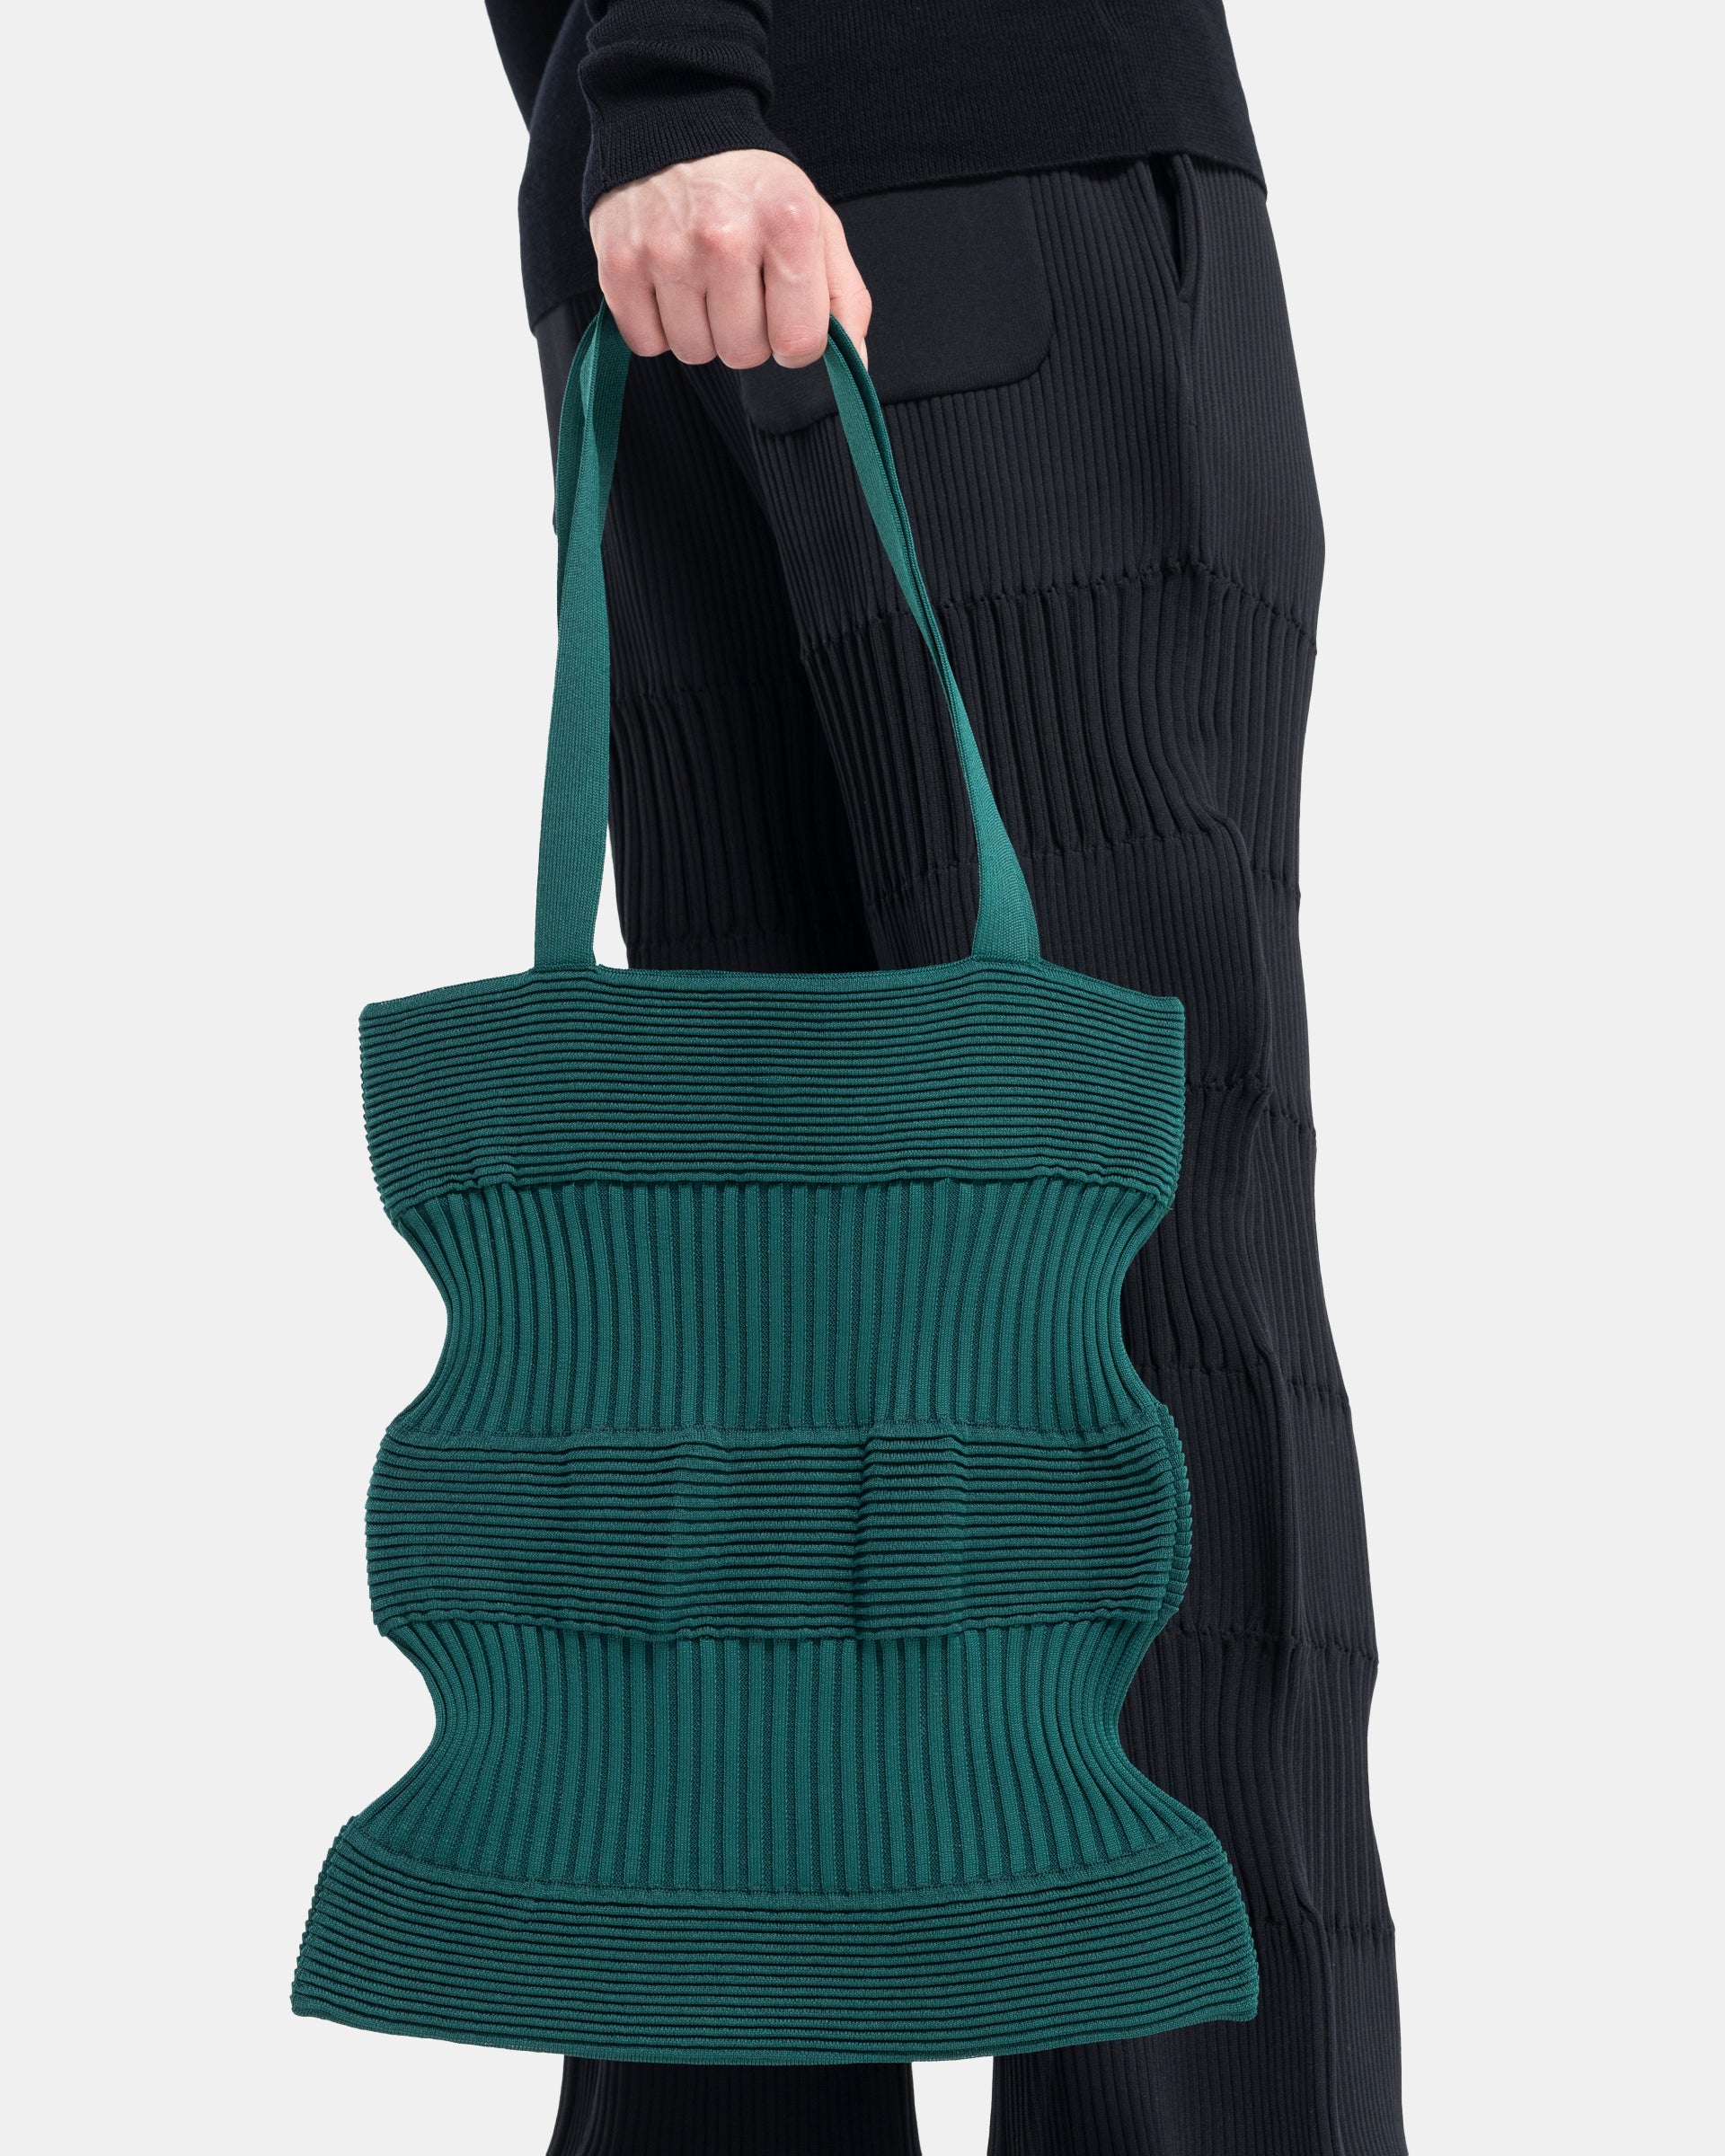 Strata Tote Bag in Dark Green